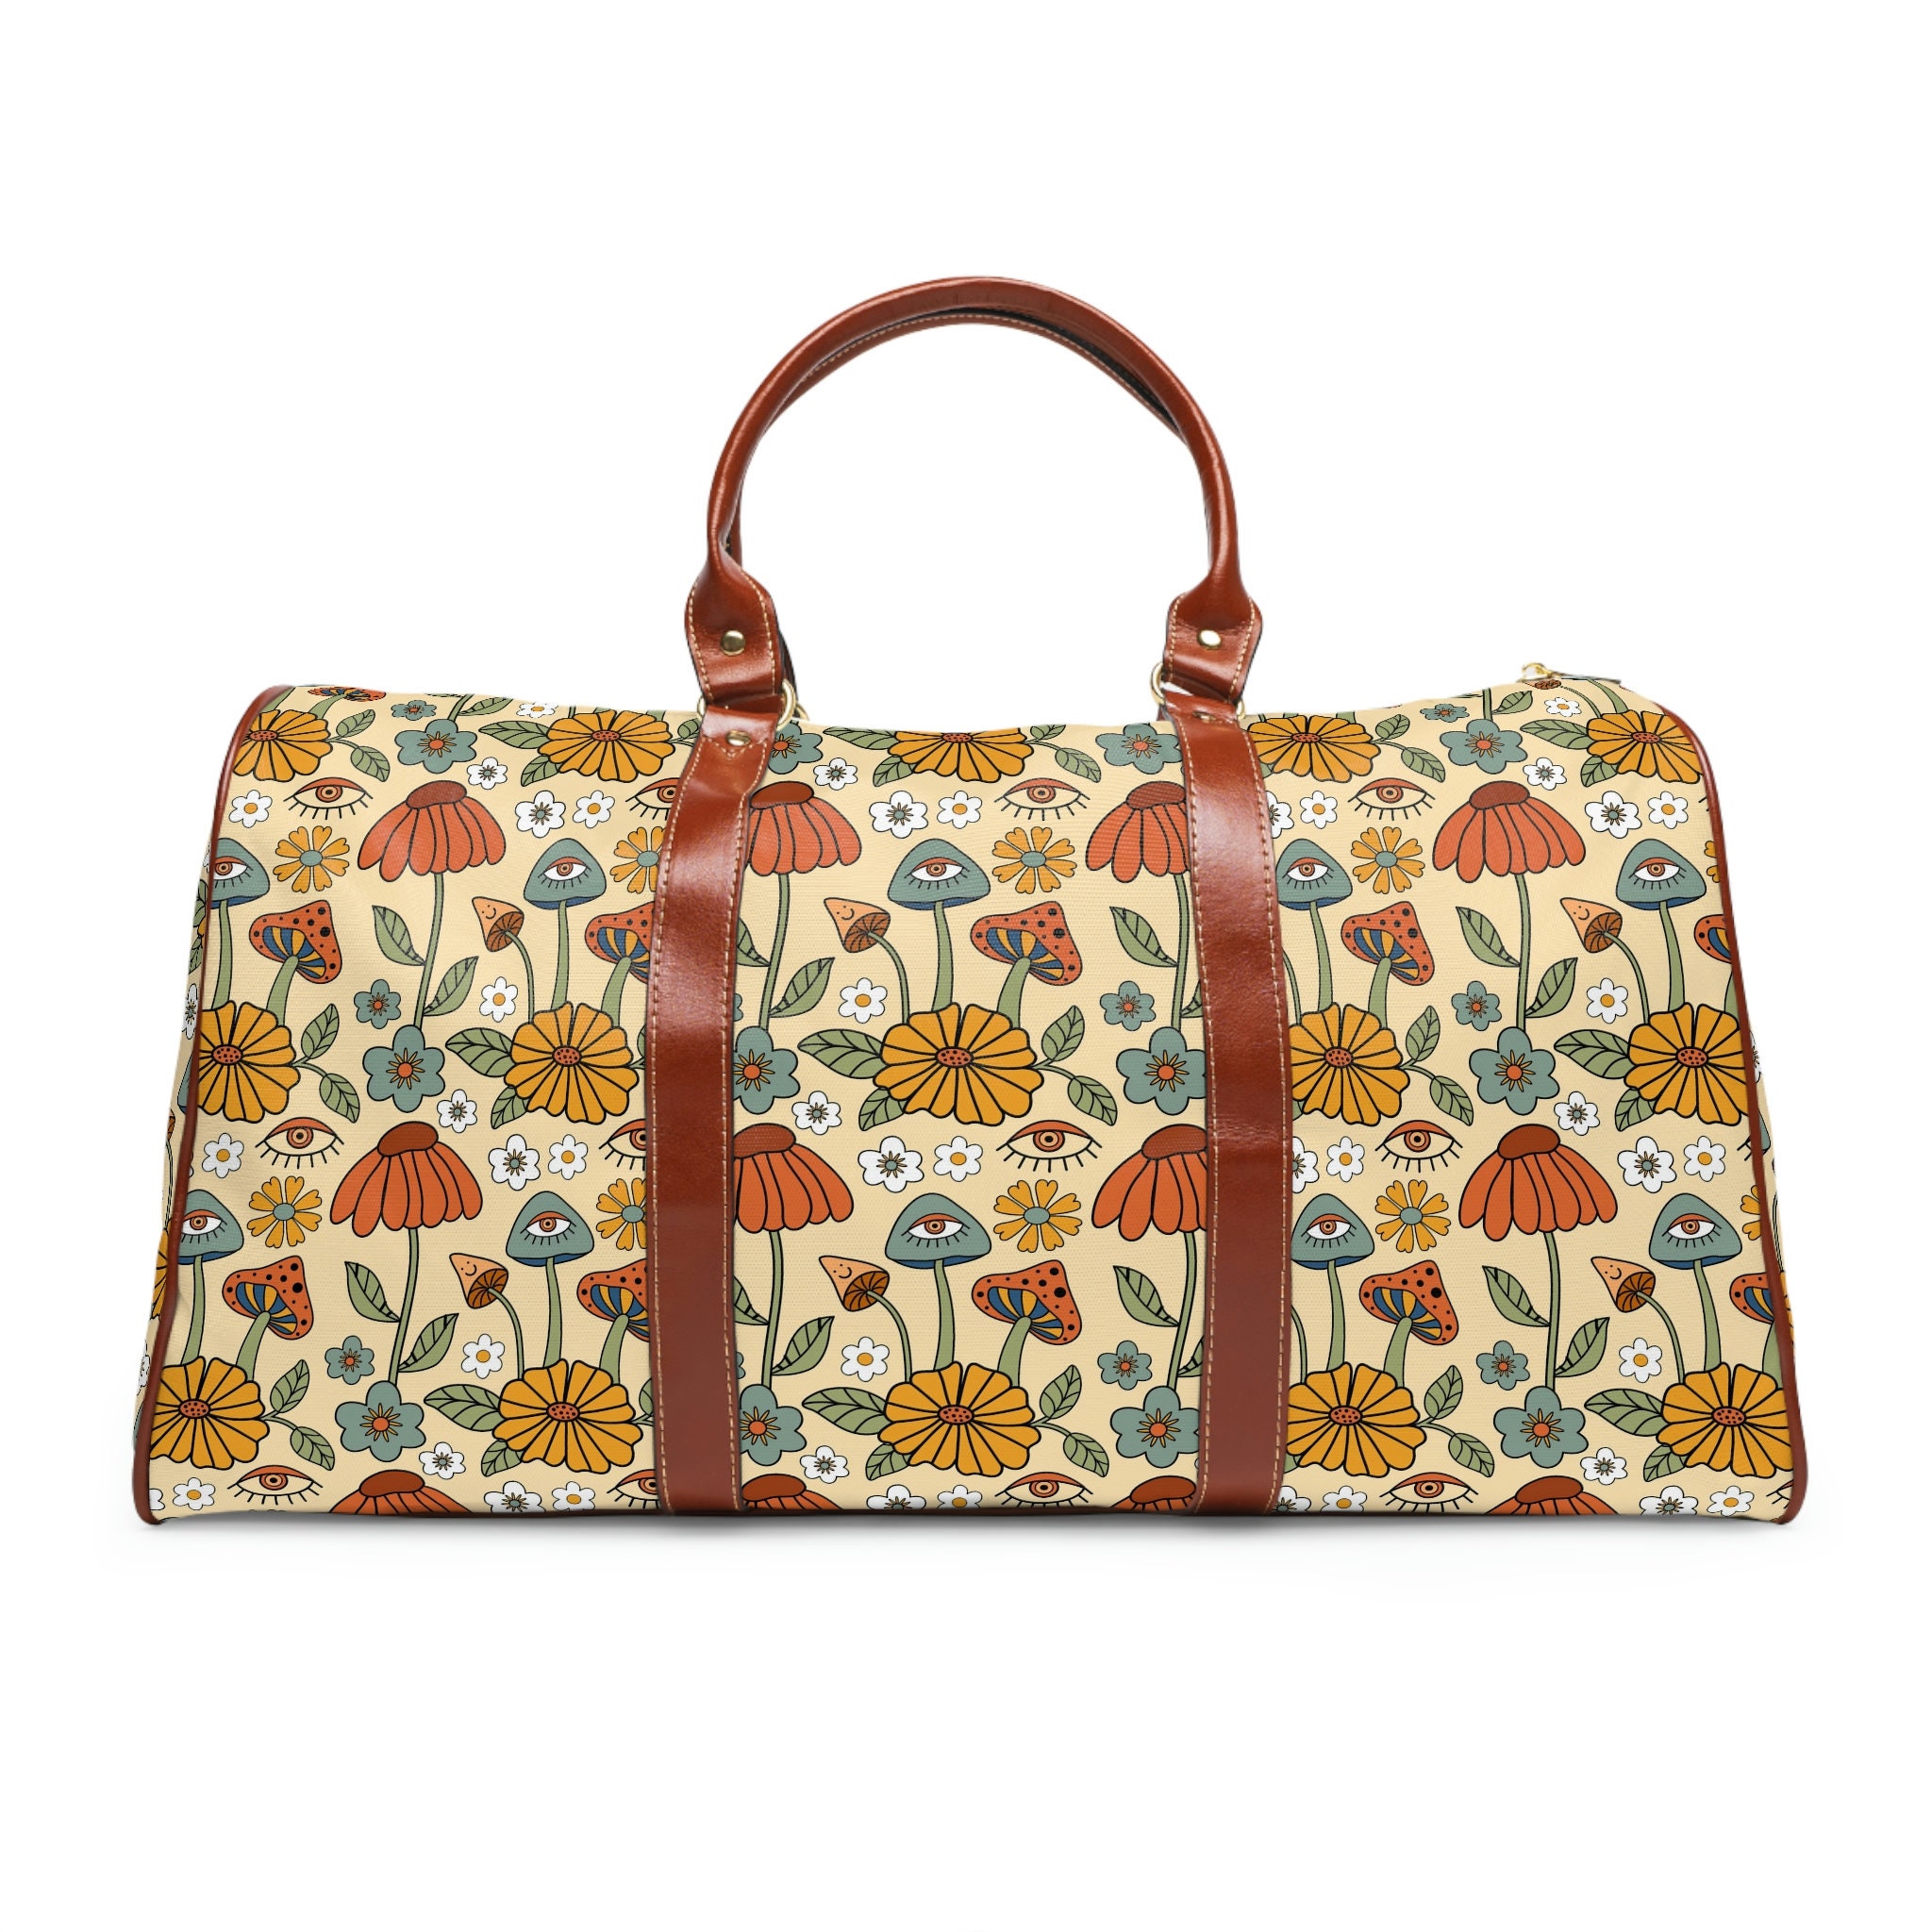  Designer Weekender Bag Cute Floral CartoonyTote Large